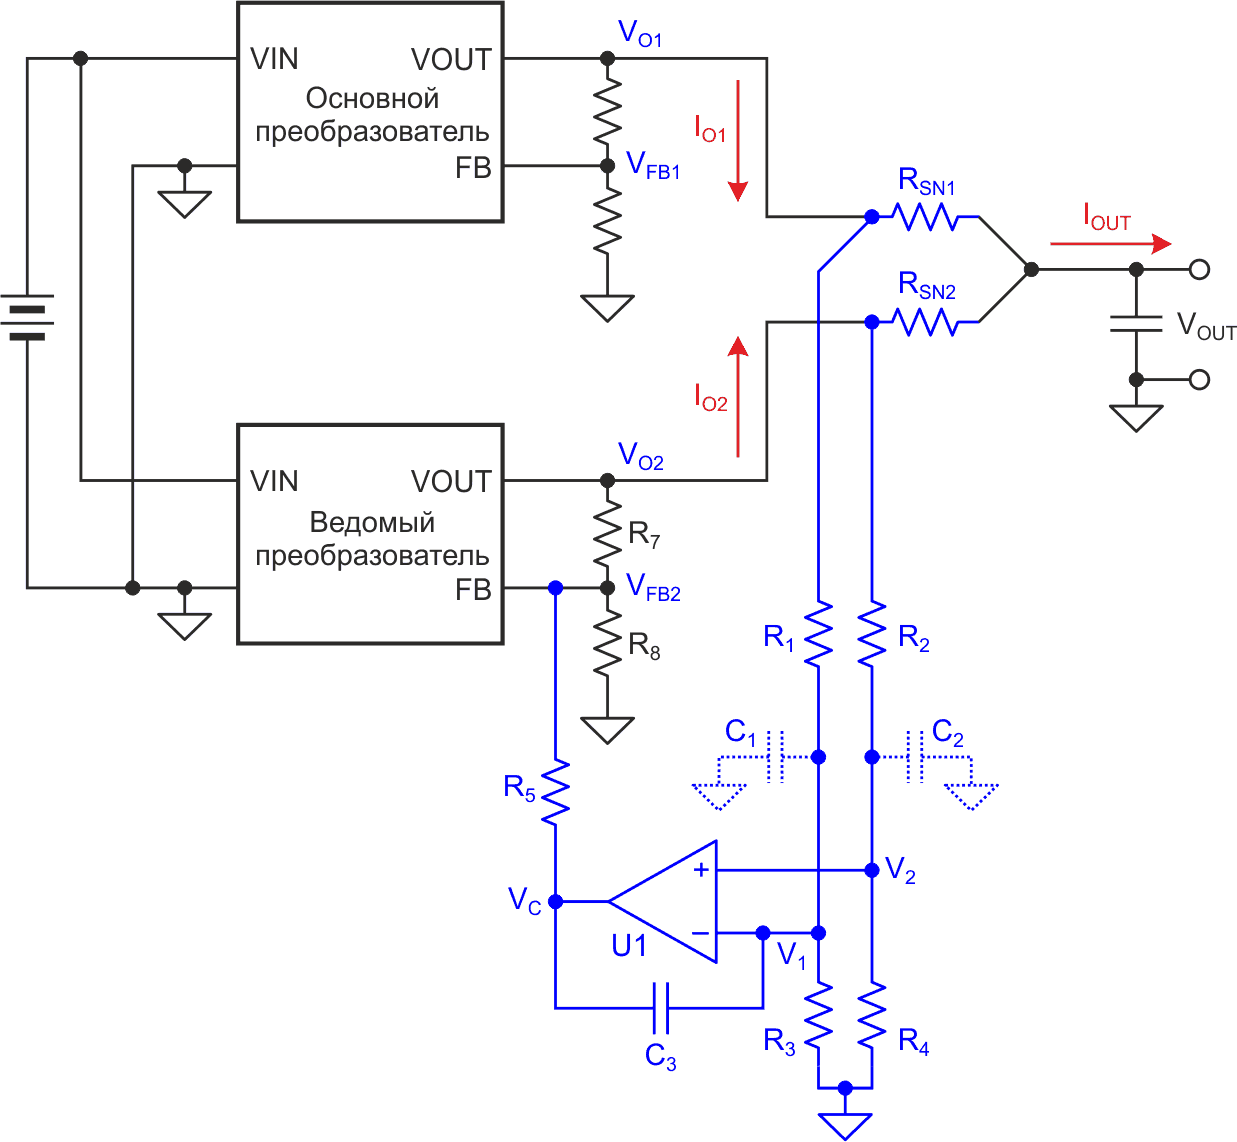 В этой схеме управления распределением токов ток нагрузки ведомого преобразователя принудительно поддерживается равным току основного.